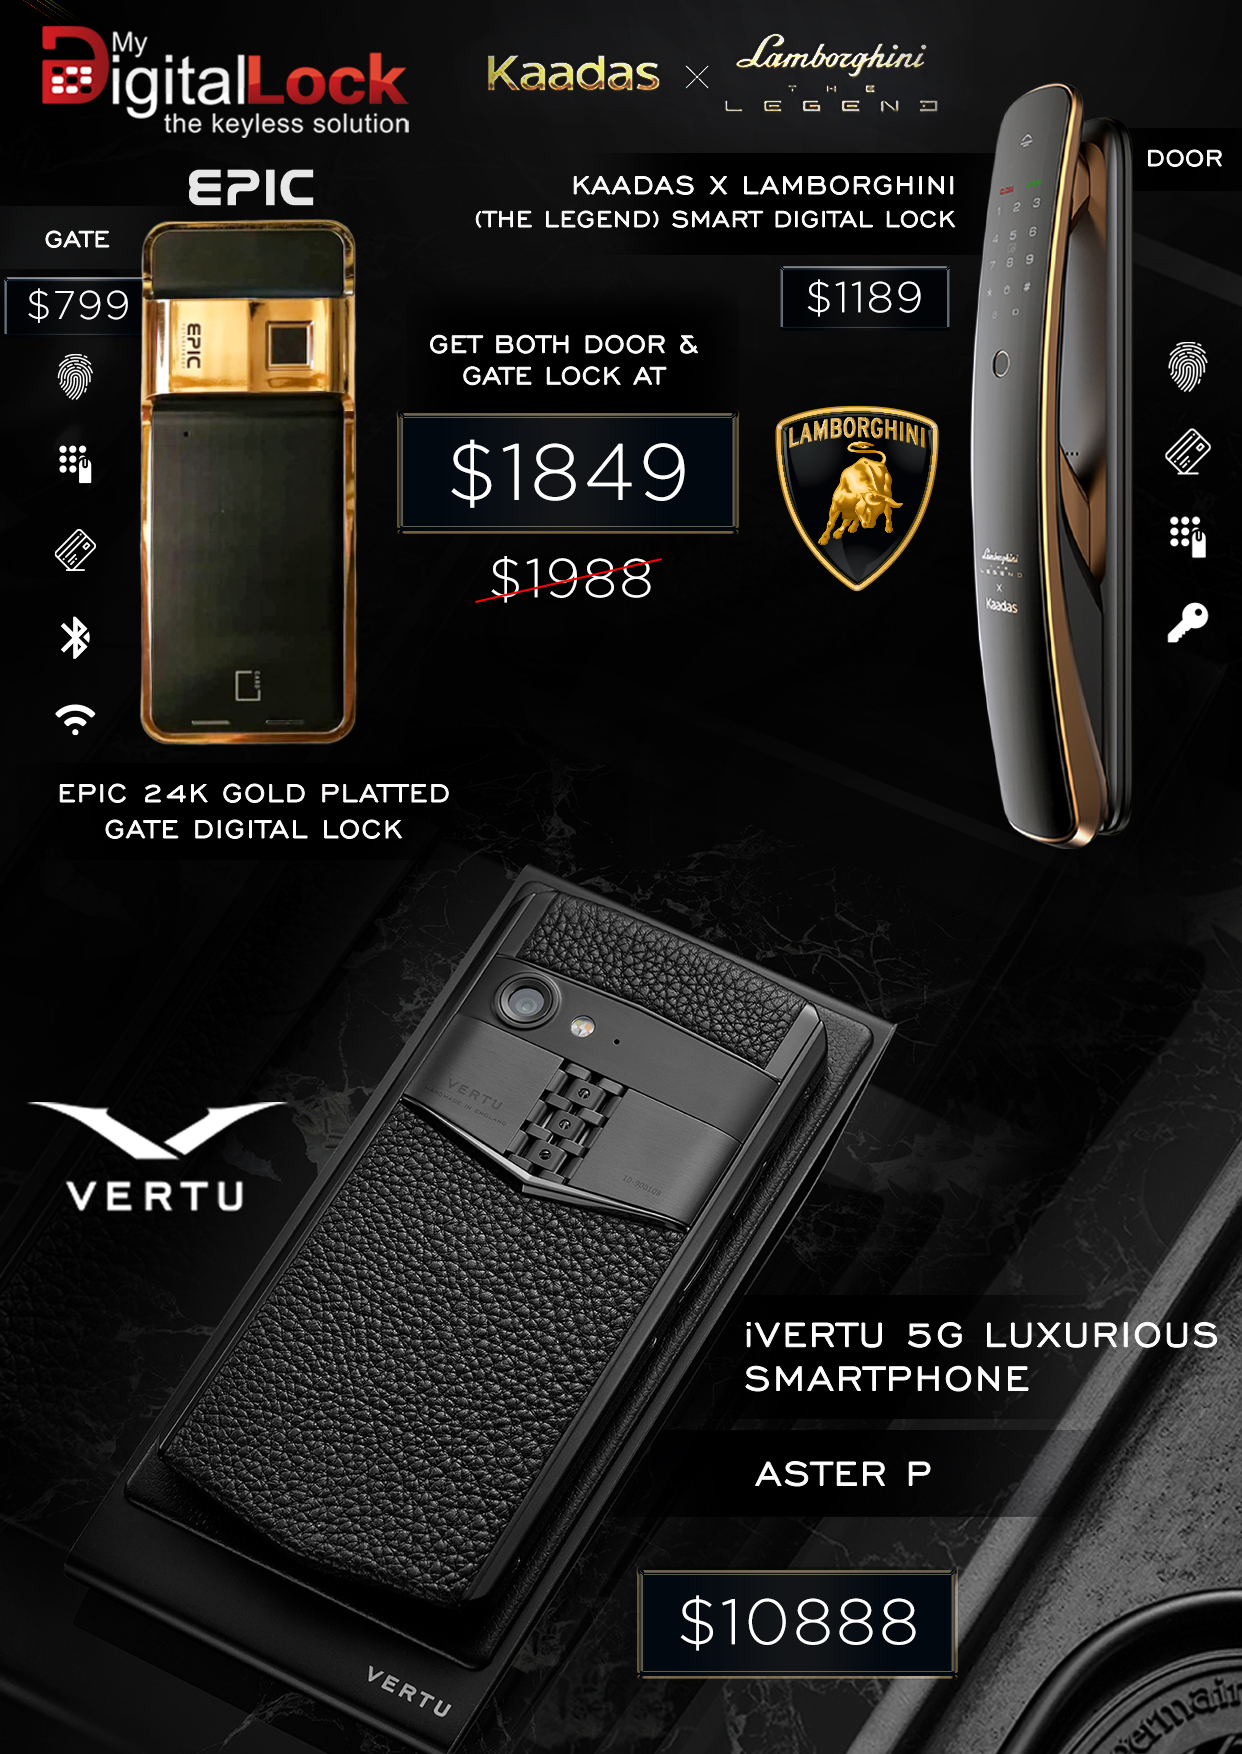 My-Digital-Lock-Lamborghini-Promotional-Epic-24k-iVertu-Smartphone_2021